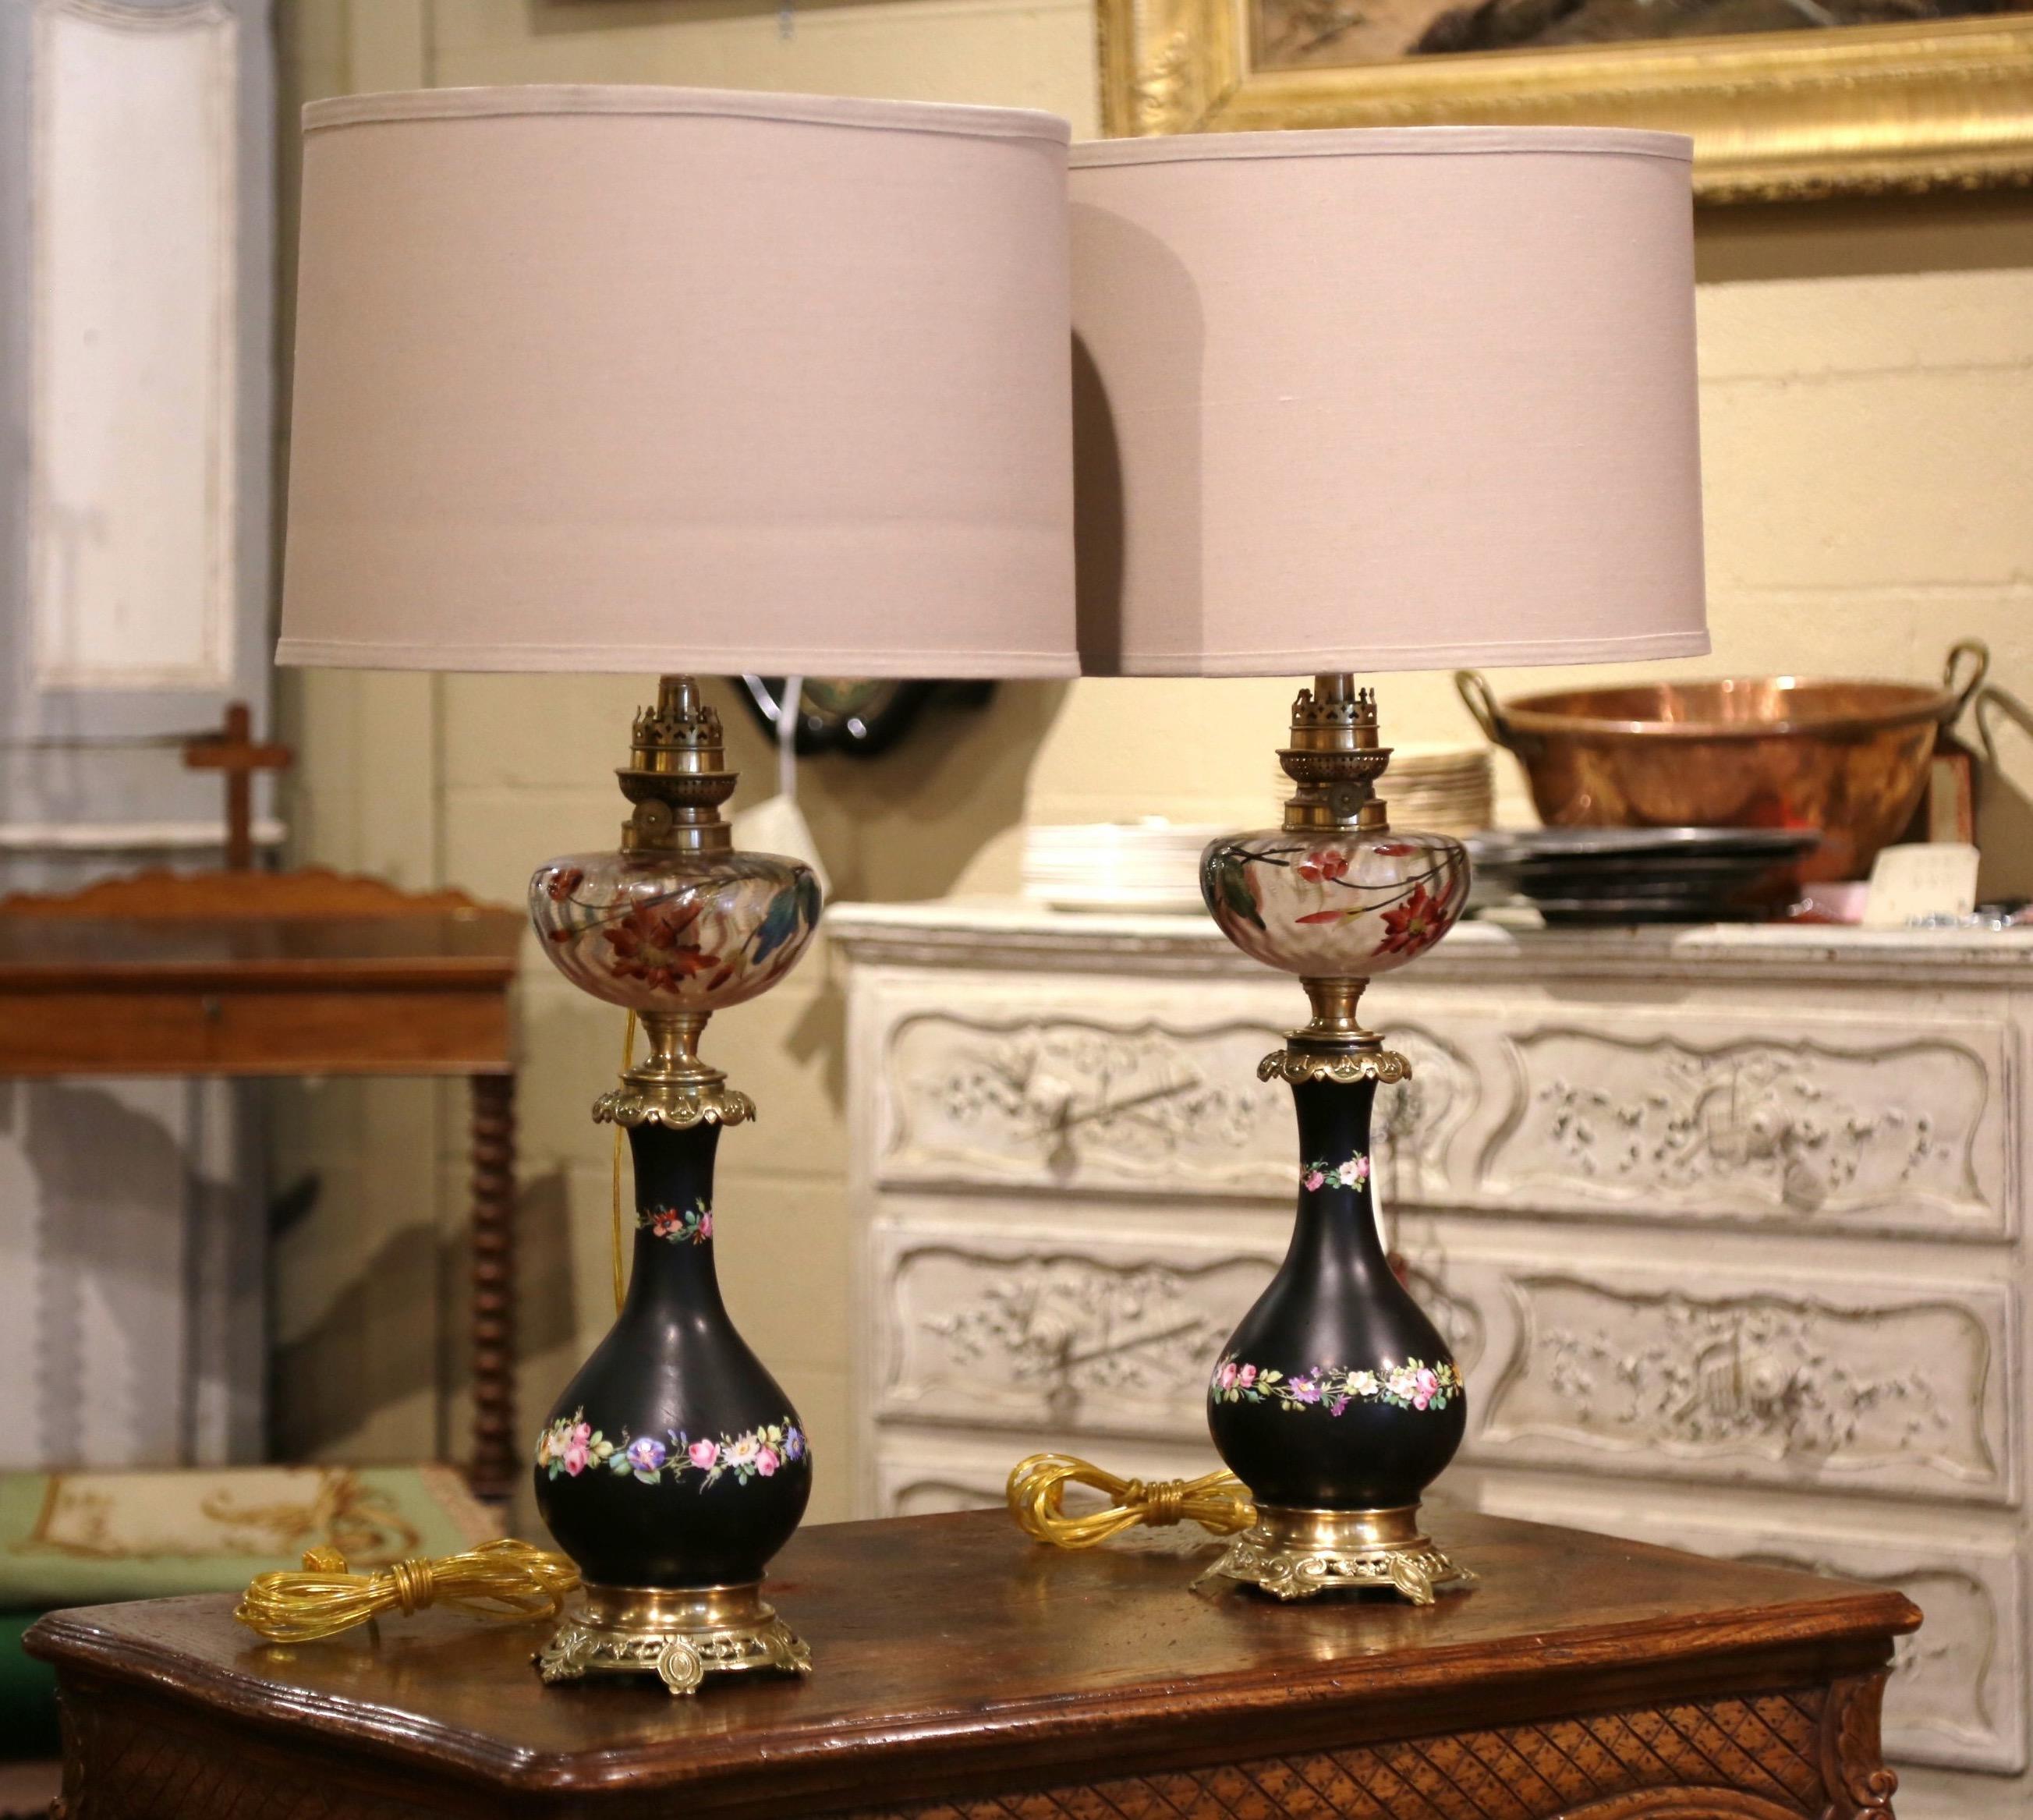 Ces élégantes lampes à huile anciennes transformées en lampes de table ont été fabriquées en France, vers 1880. Les hautes 